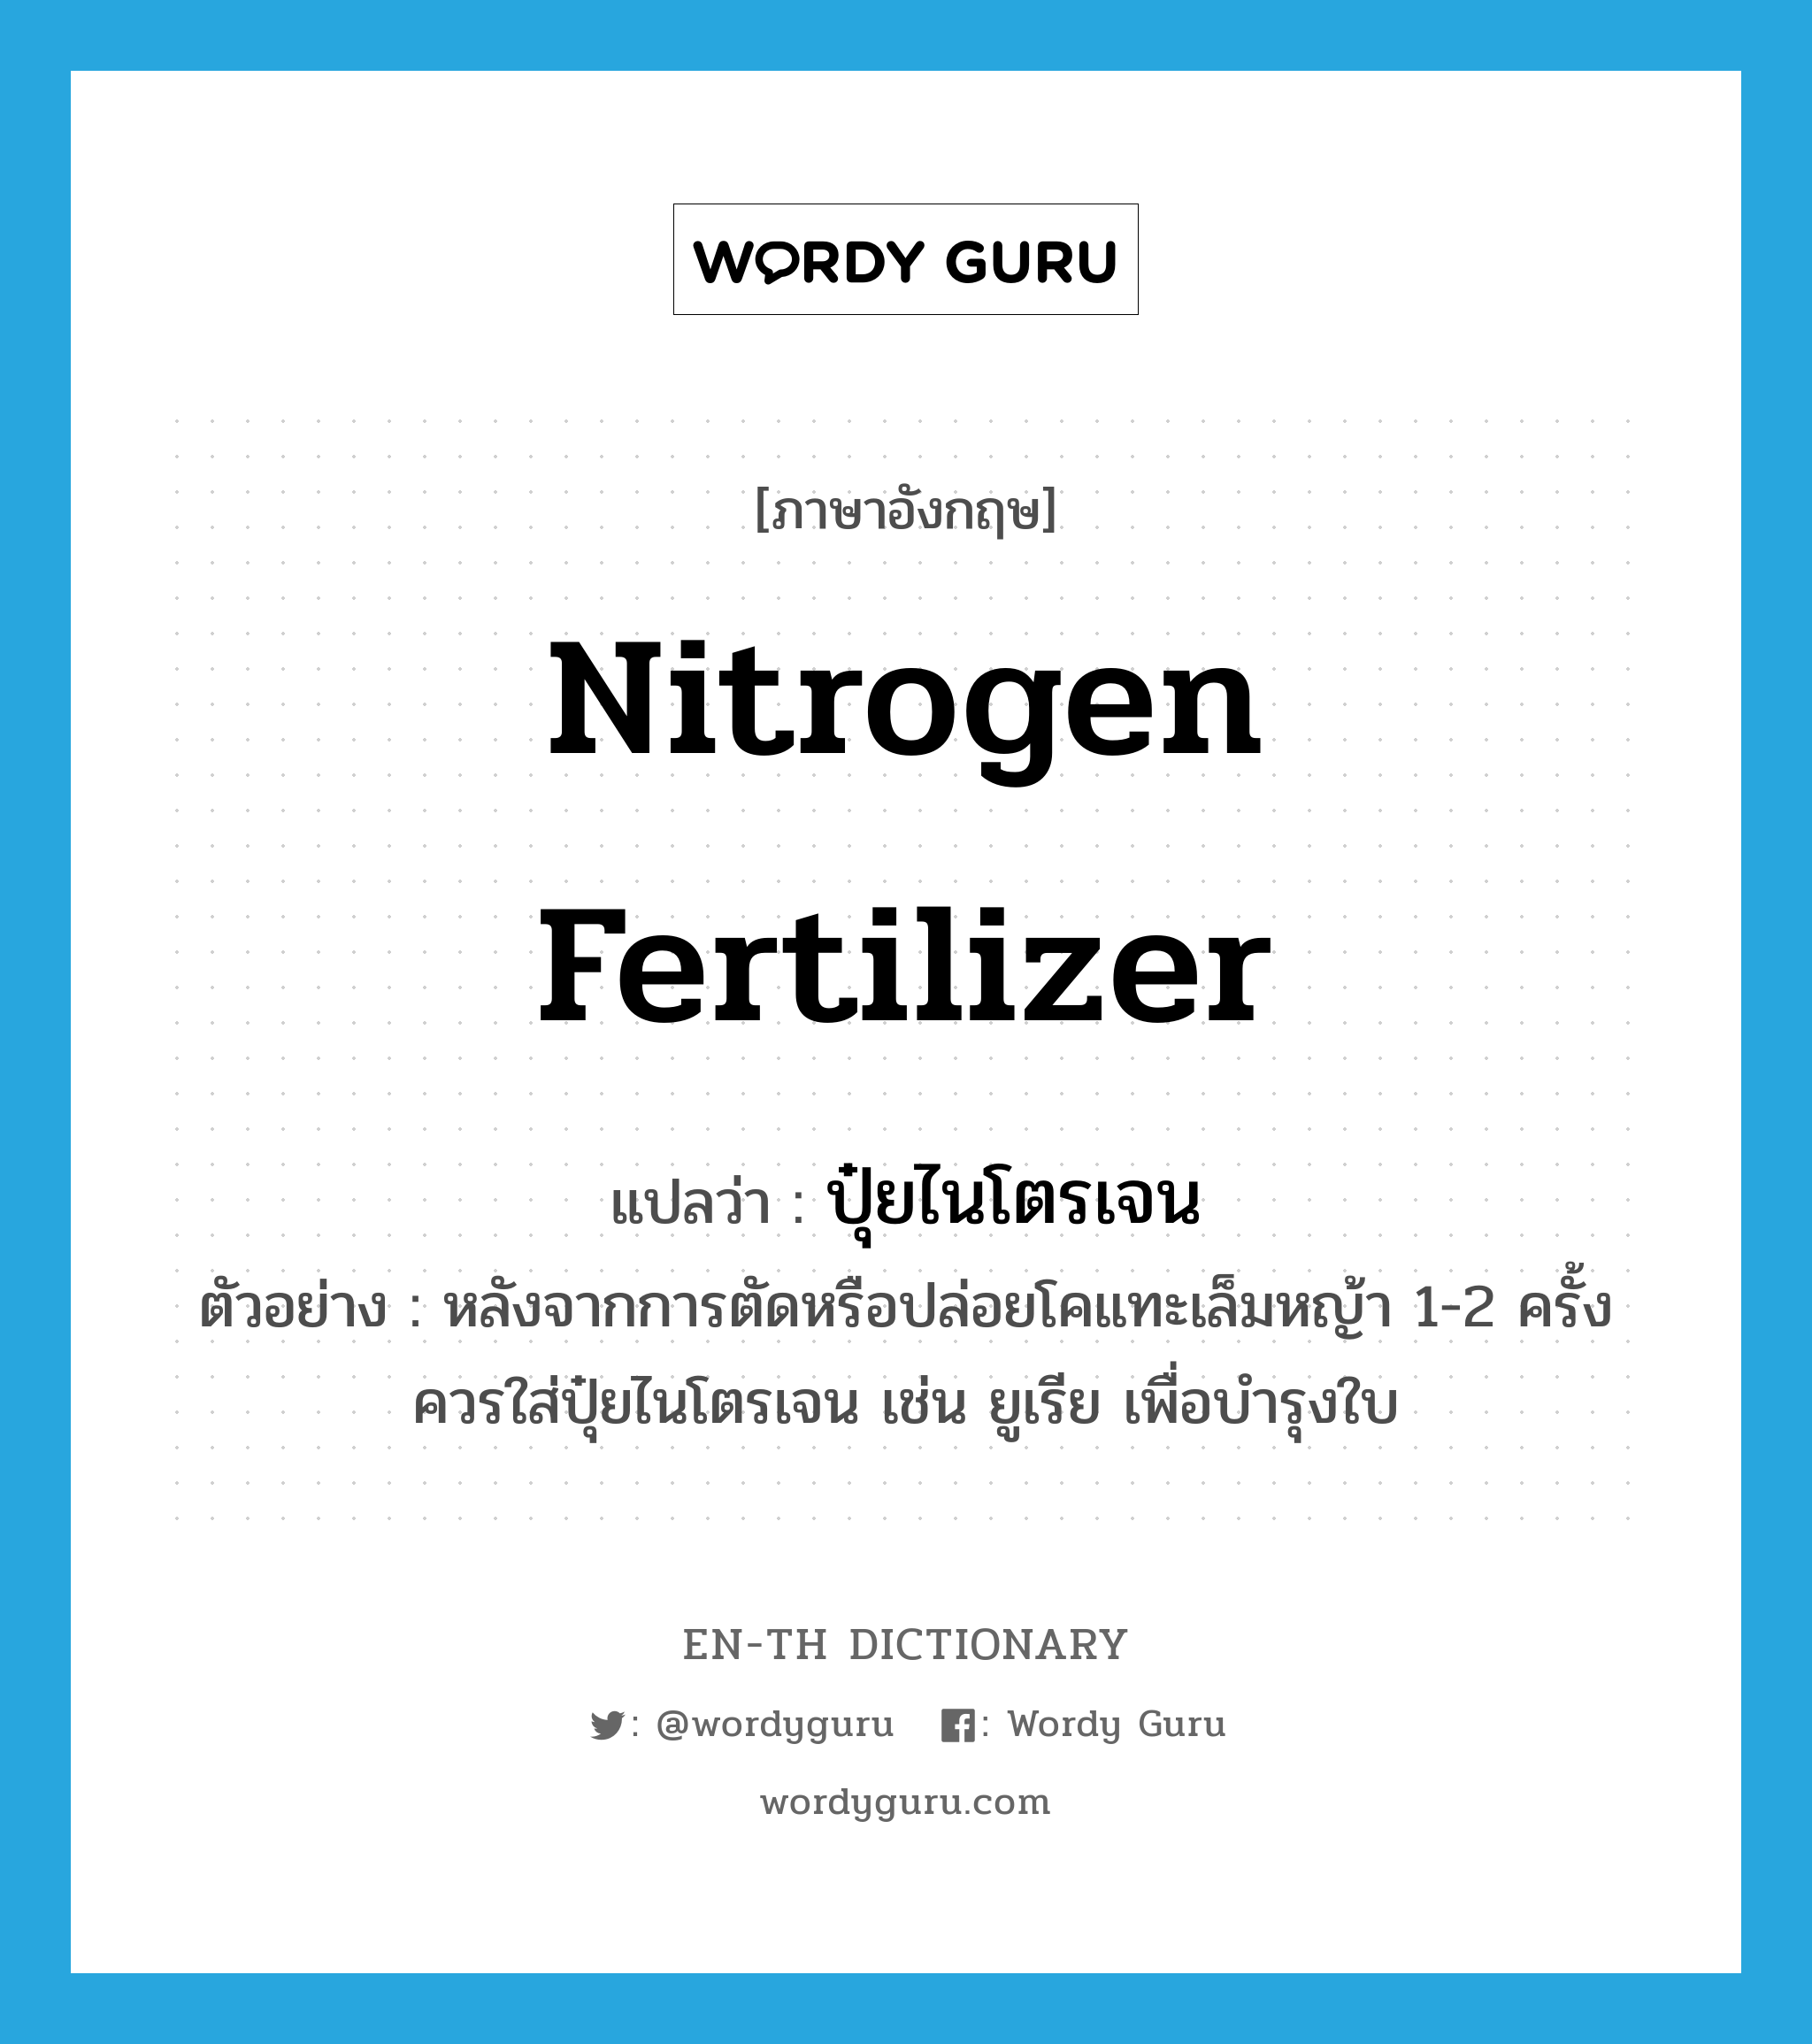 ปุ๋ยไนโตรเจน ภาษาอังกฤษ?, คำศัพท์ภาษาอังกฤษ ปุ๋ยไนโตรเจน แปลว่า nitrogen fertilizer ประเภท N ตัวอย่าง หลังจากการตัดหรือปล่อยโคแทะเล็มหญ้า 1-2 ครั้งควรใส่ปุ๋ยไนโตรเจน เช่น ยูเรีย เพื่อบำรุงใบ หมวด N